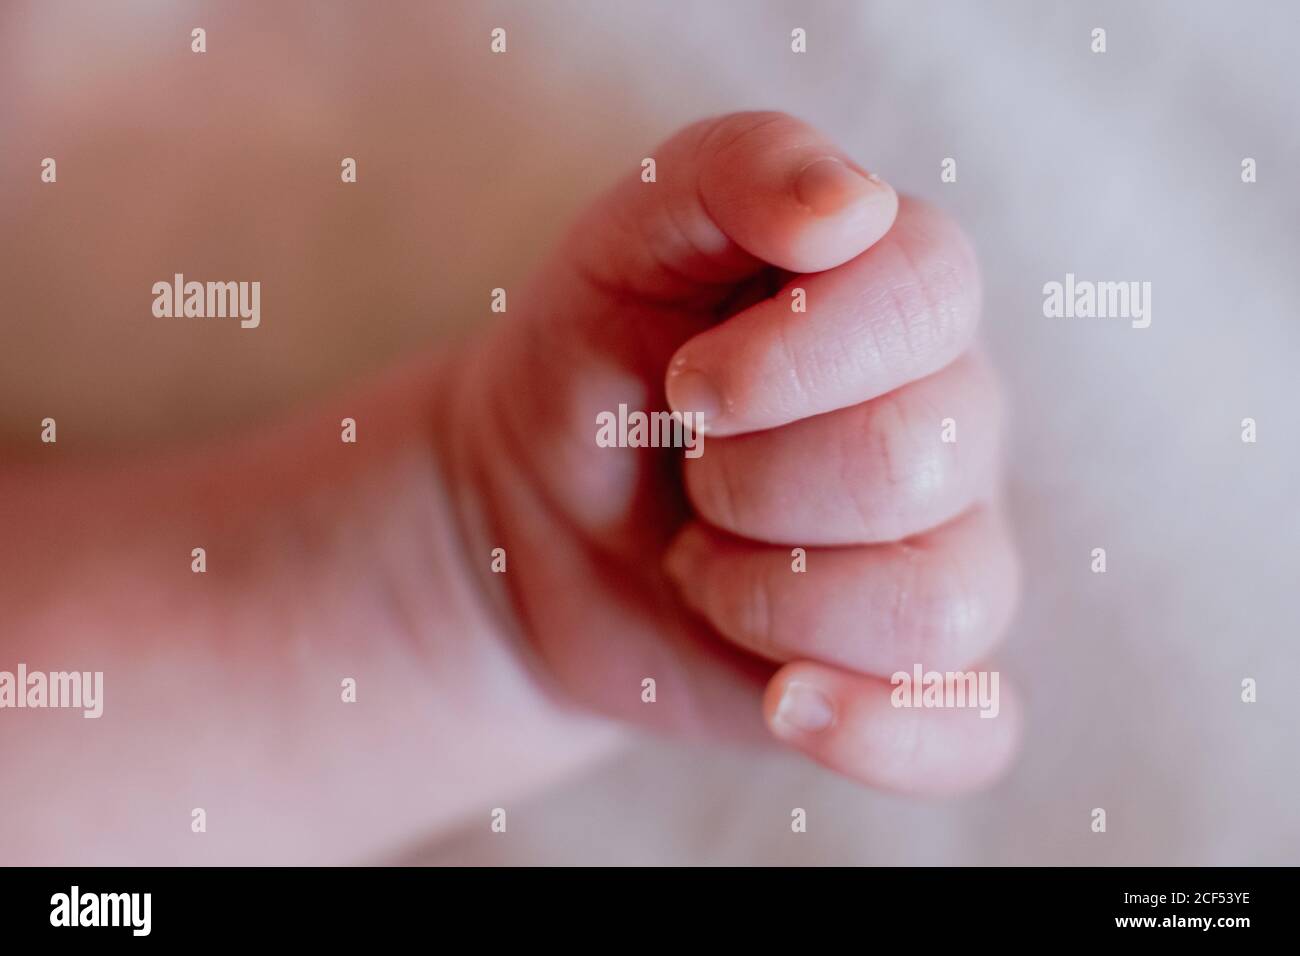 Von oben Nahaufnahme Hand der Ernte ruhig Säugling mit rosa Haut und niedliche kleine Finger gegen verschwommenes weißes Bettlaken Im hellen Schlafzimmer Stockfoto